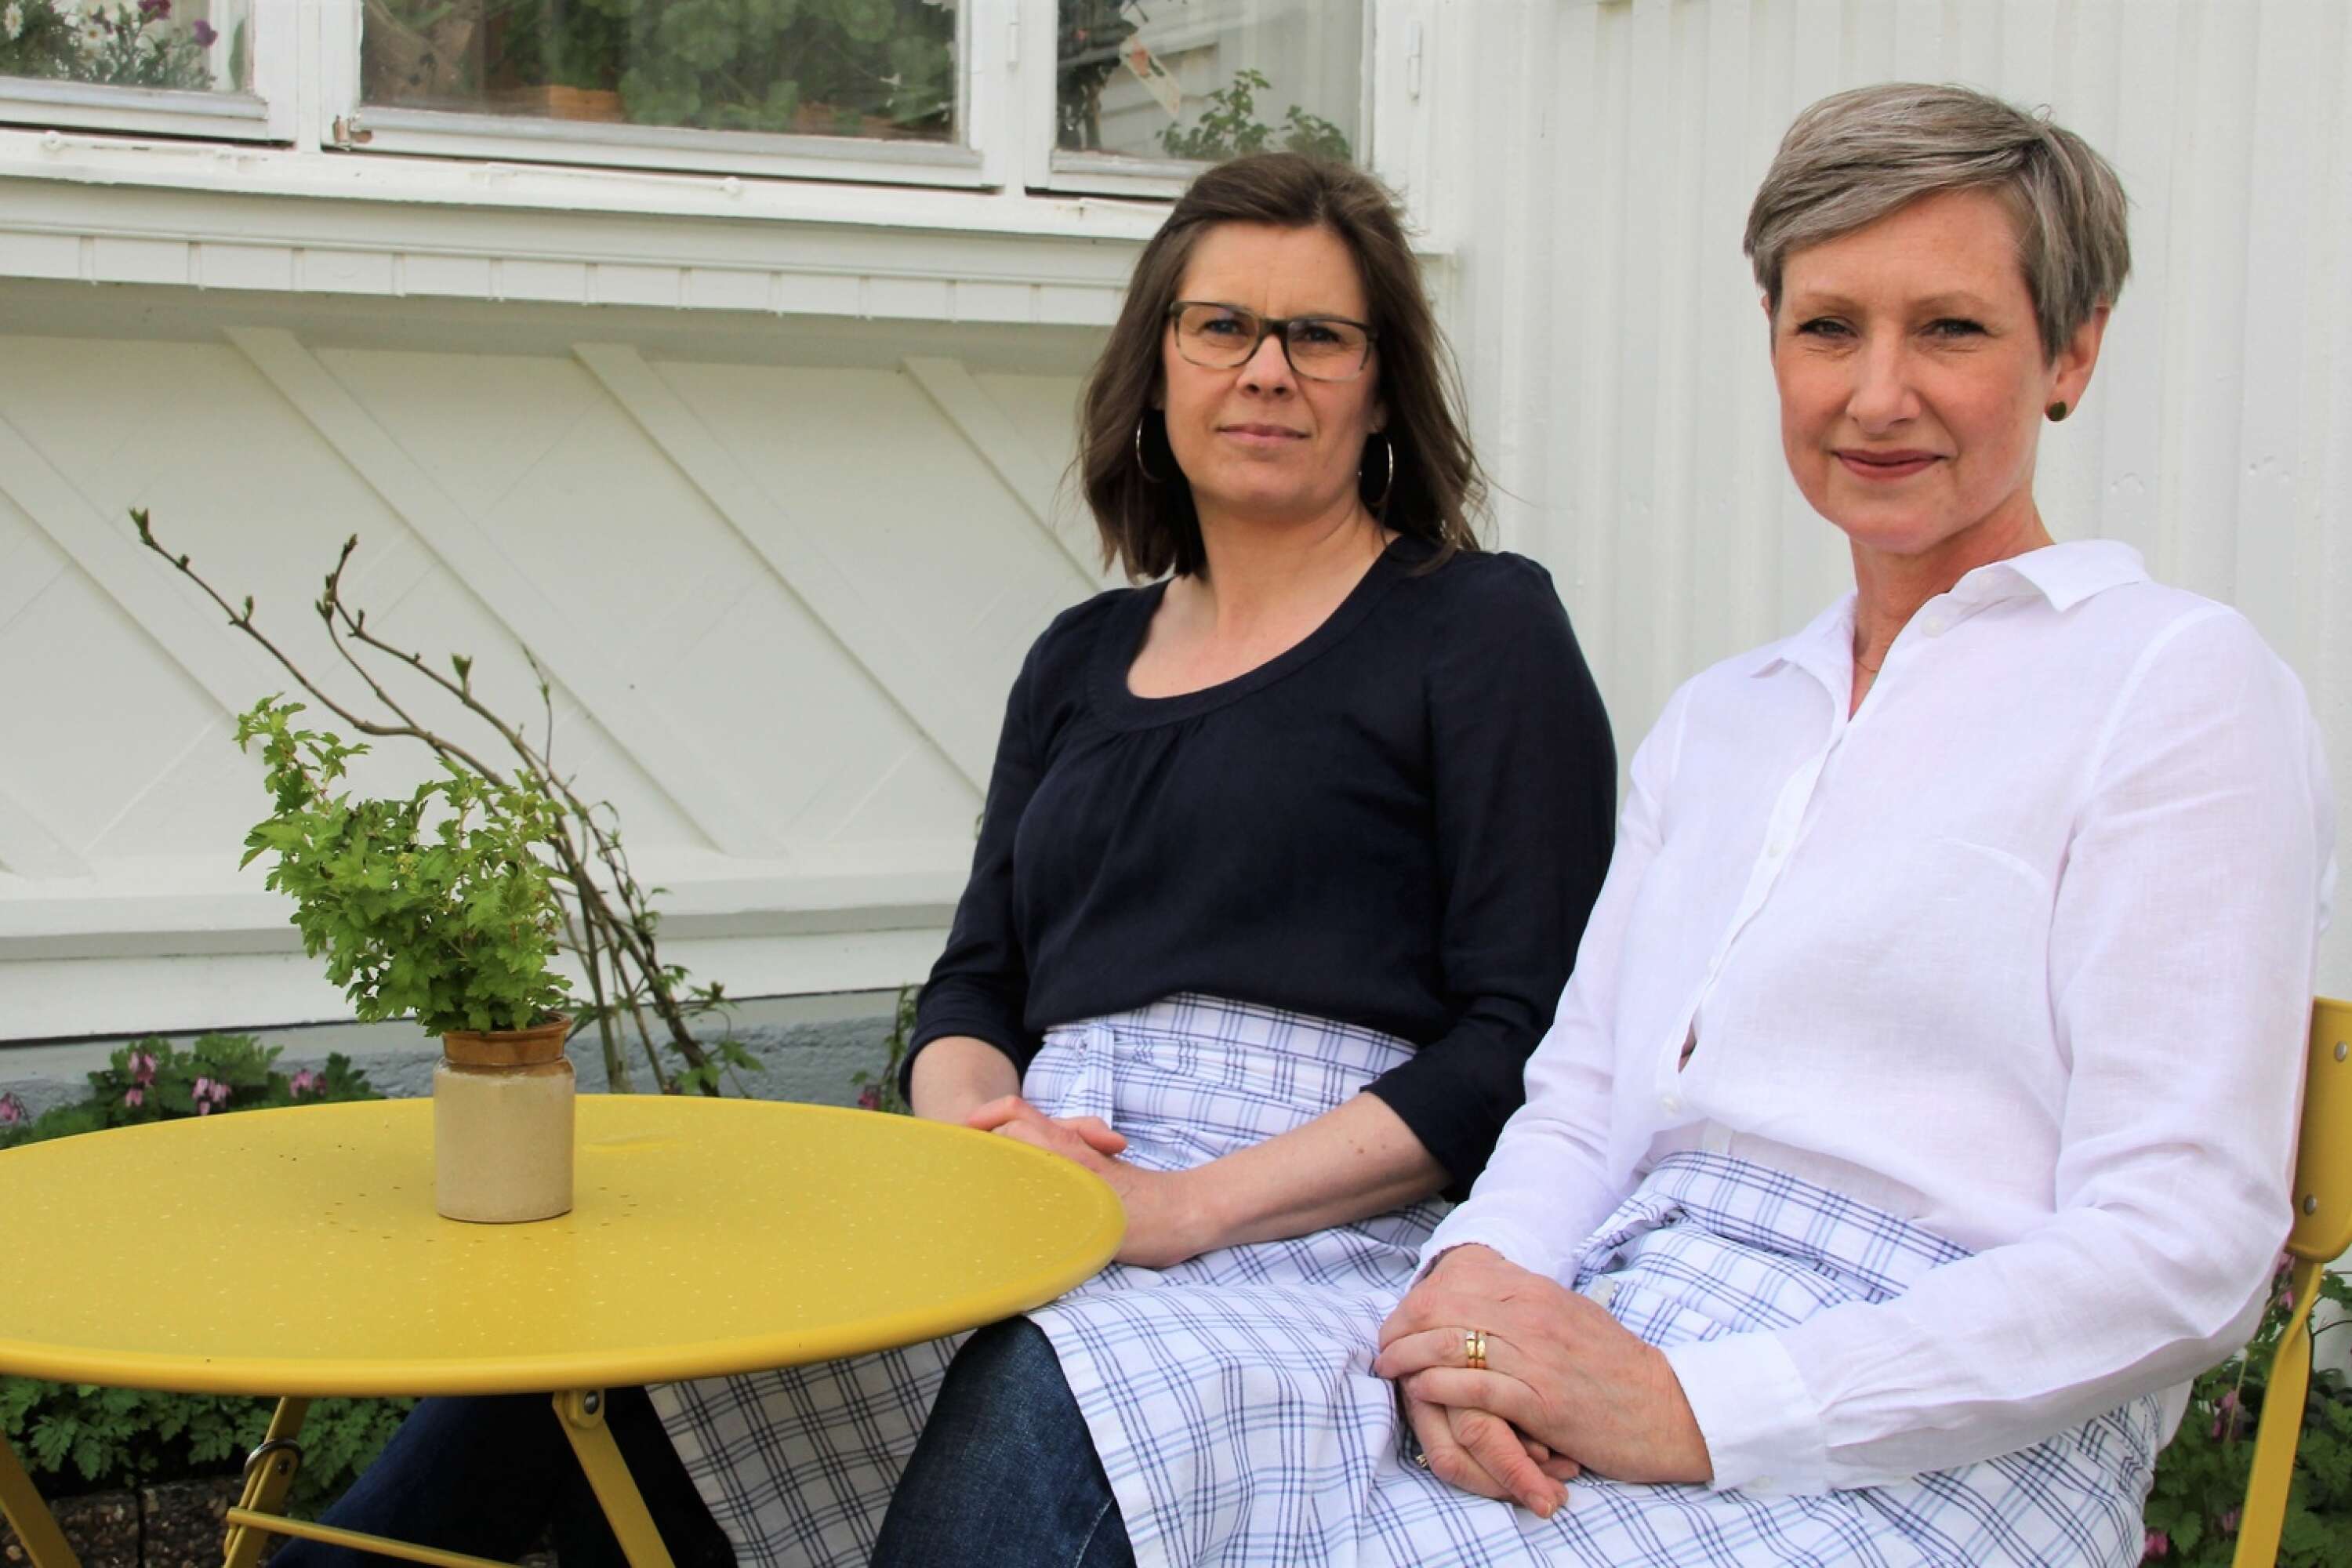 Vita huset är en ny verksamhet i Nössemark. Kompisarna Anna Sandström och Ulrika Leandersson ser ett ökat intresse för verksamheten. 